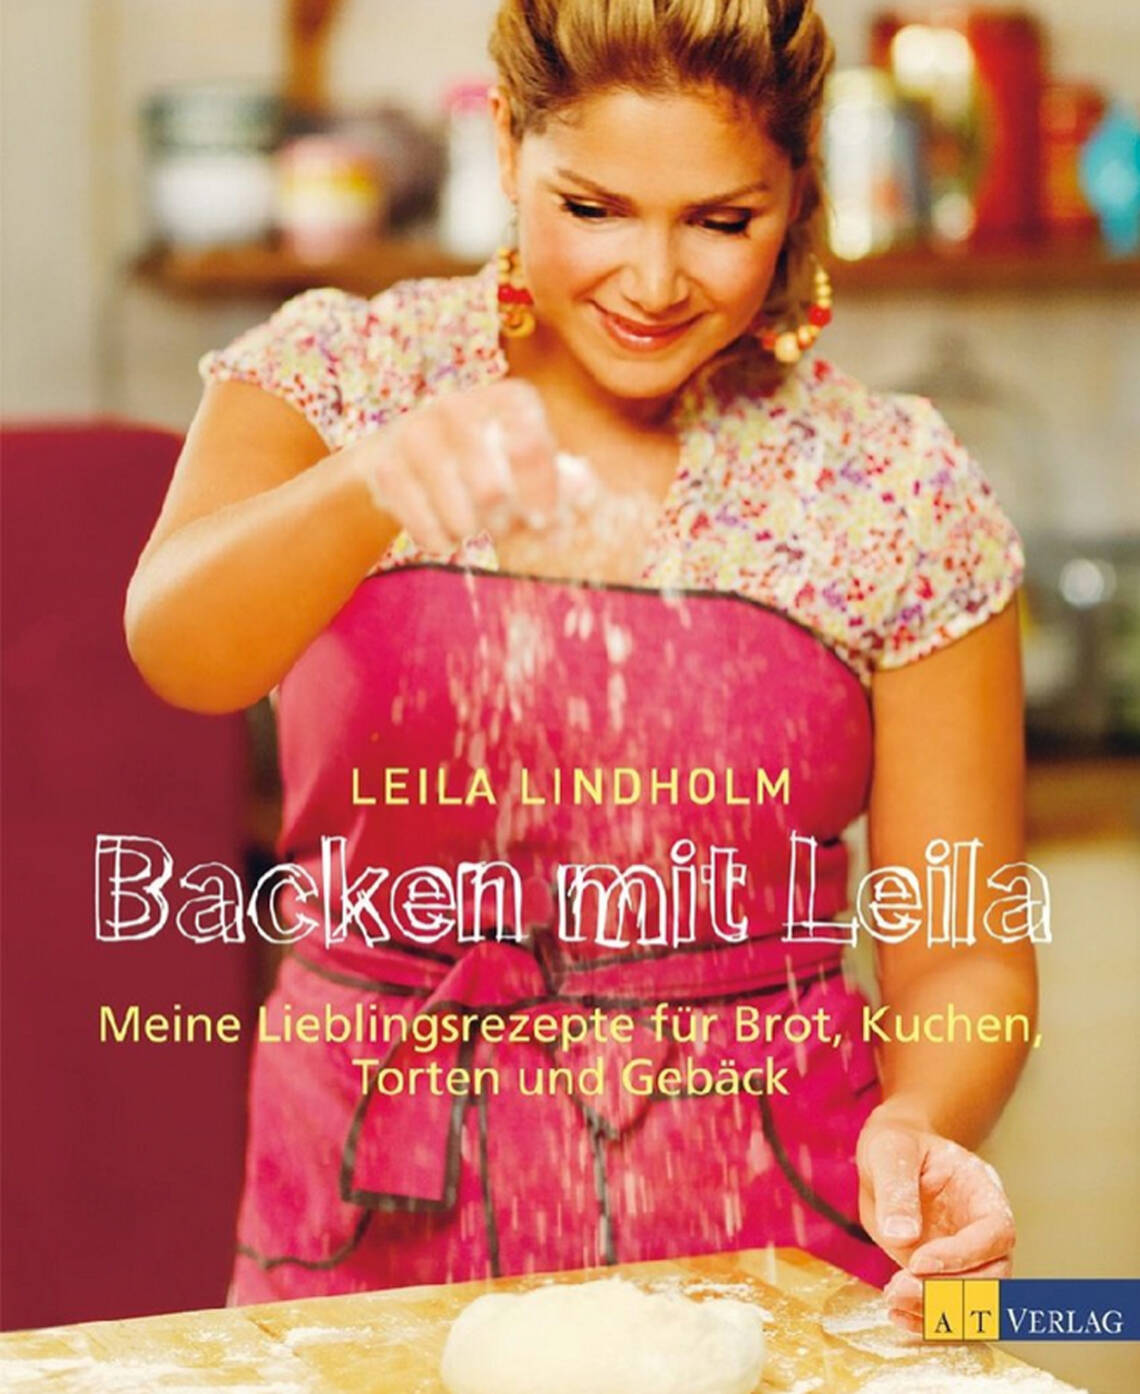 Backen mit Leila von Leila Lindholm